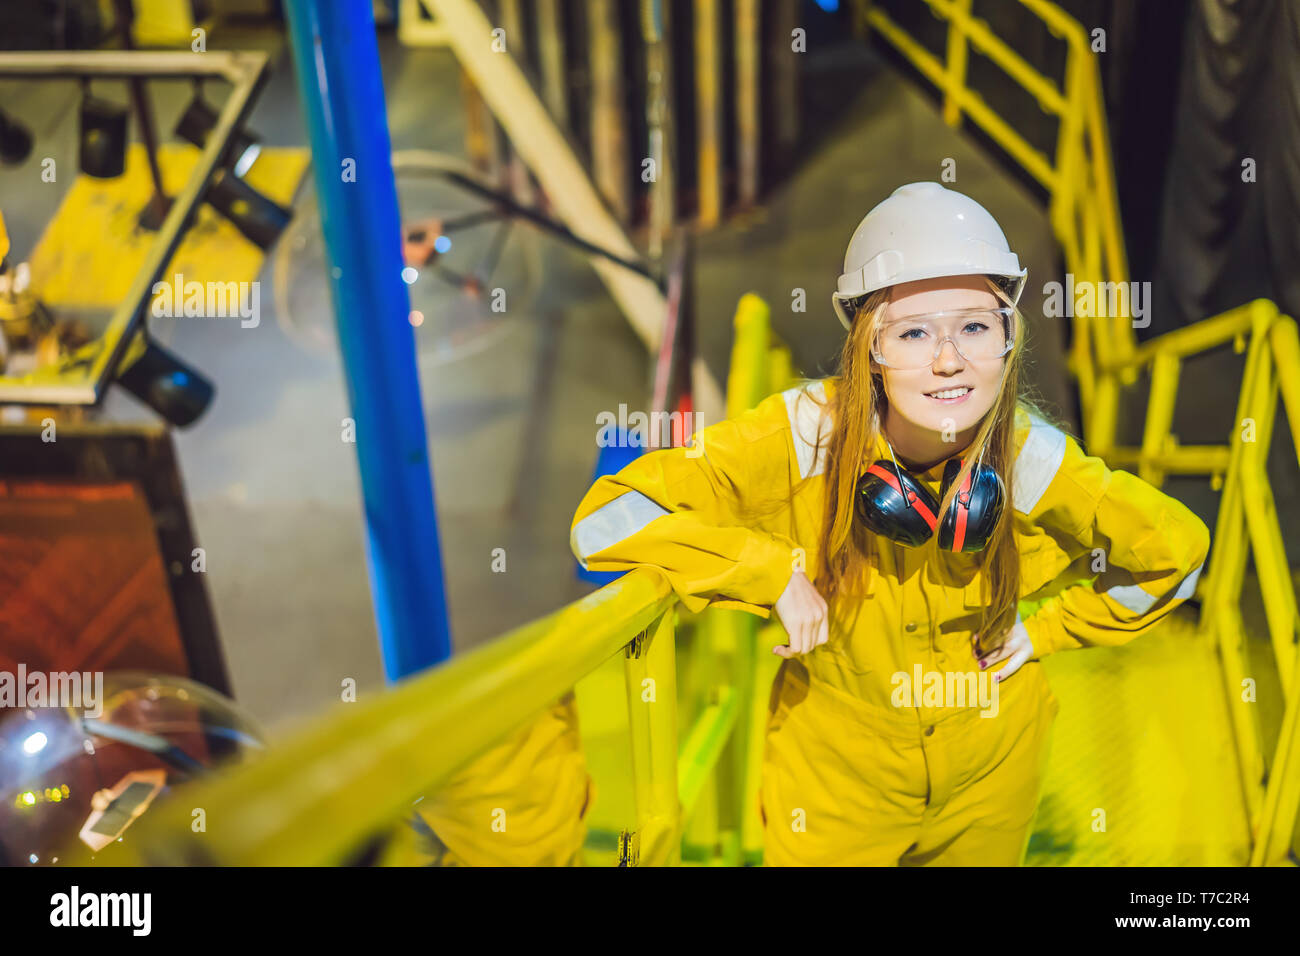 Jeune femme en uniforme de travail jaune, les lunettes et le casque dans un environnement industriel, plate-forme d'huile ou de gaz liquéfié plant Banque D'Images